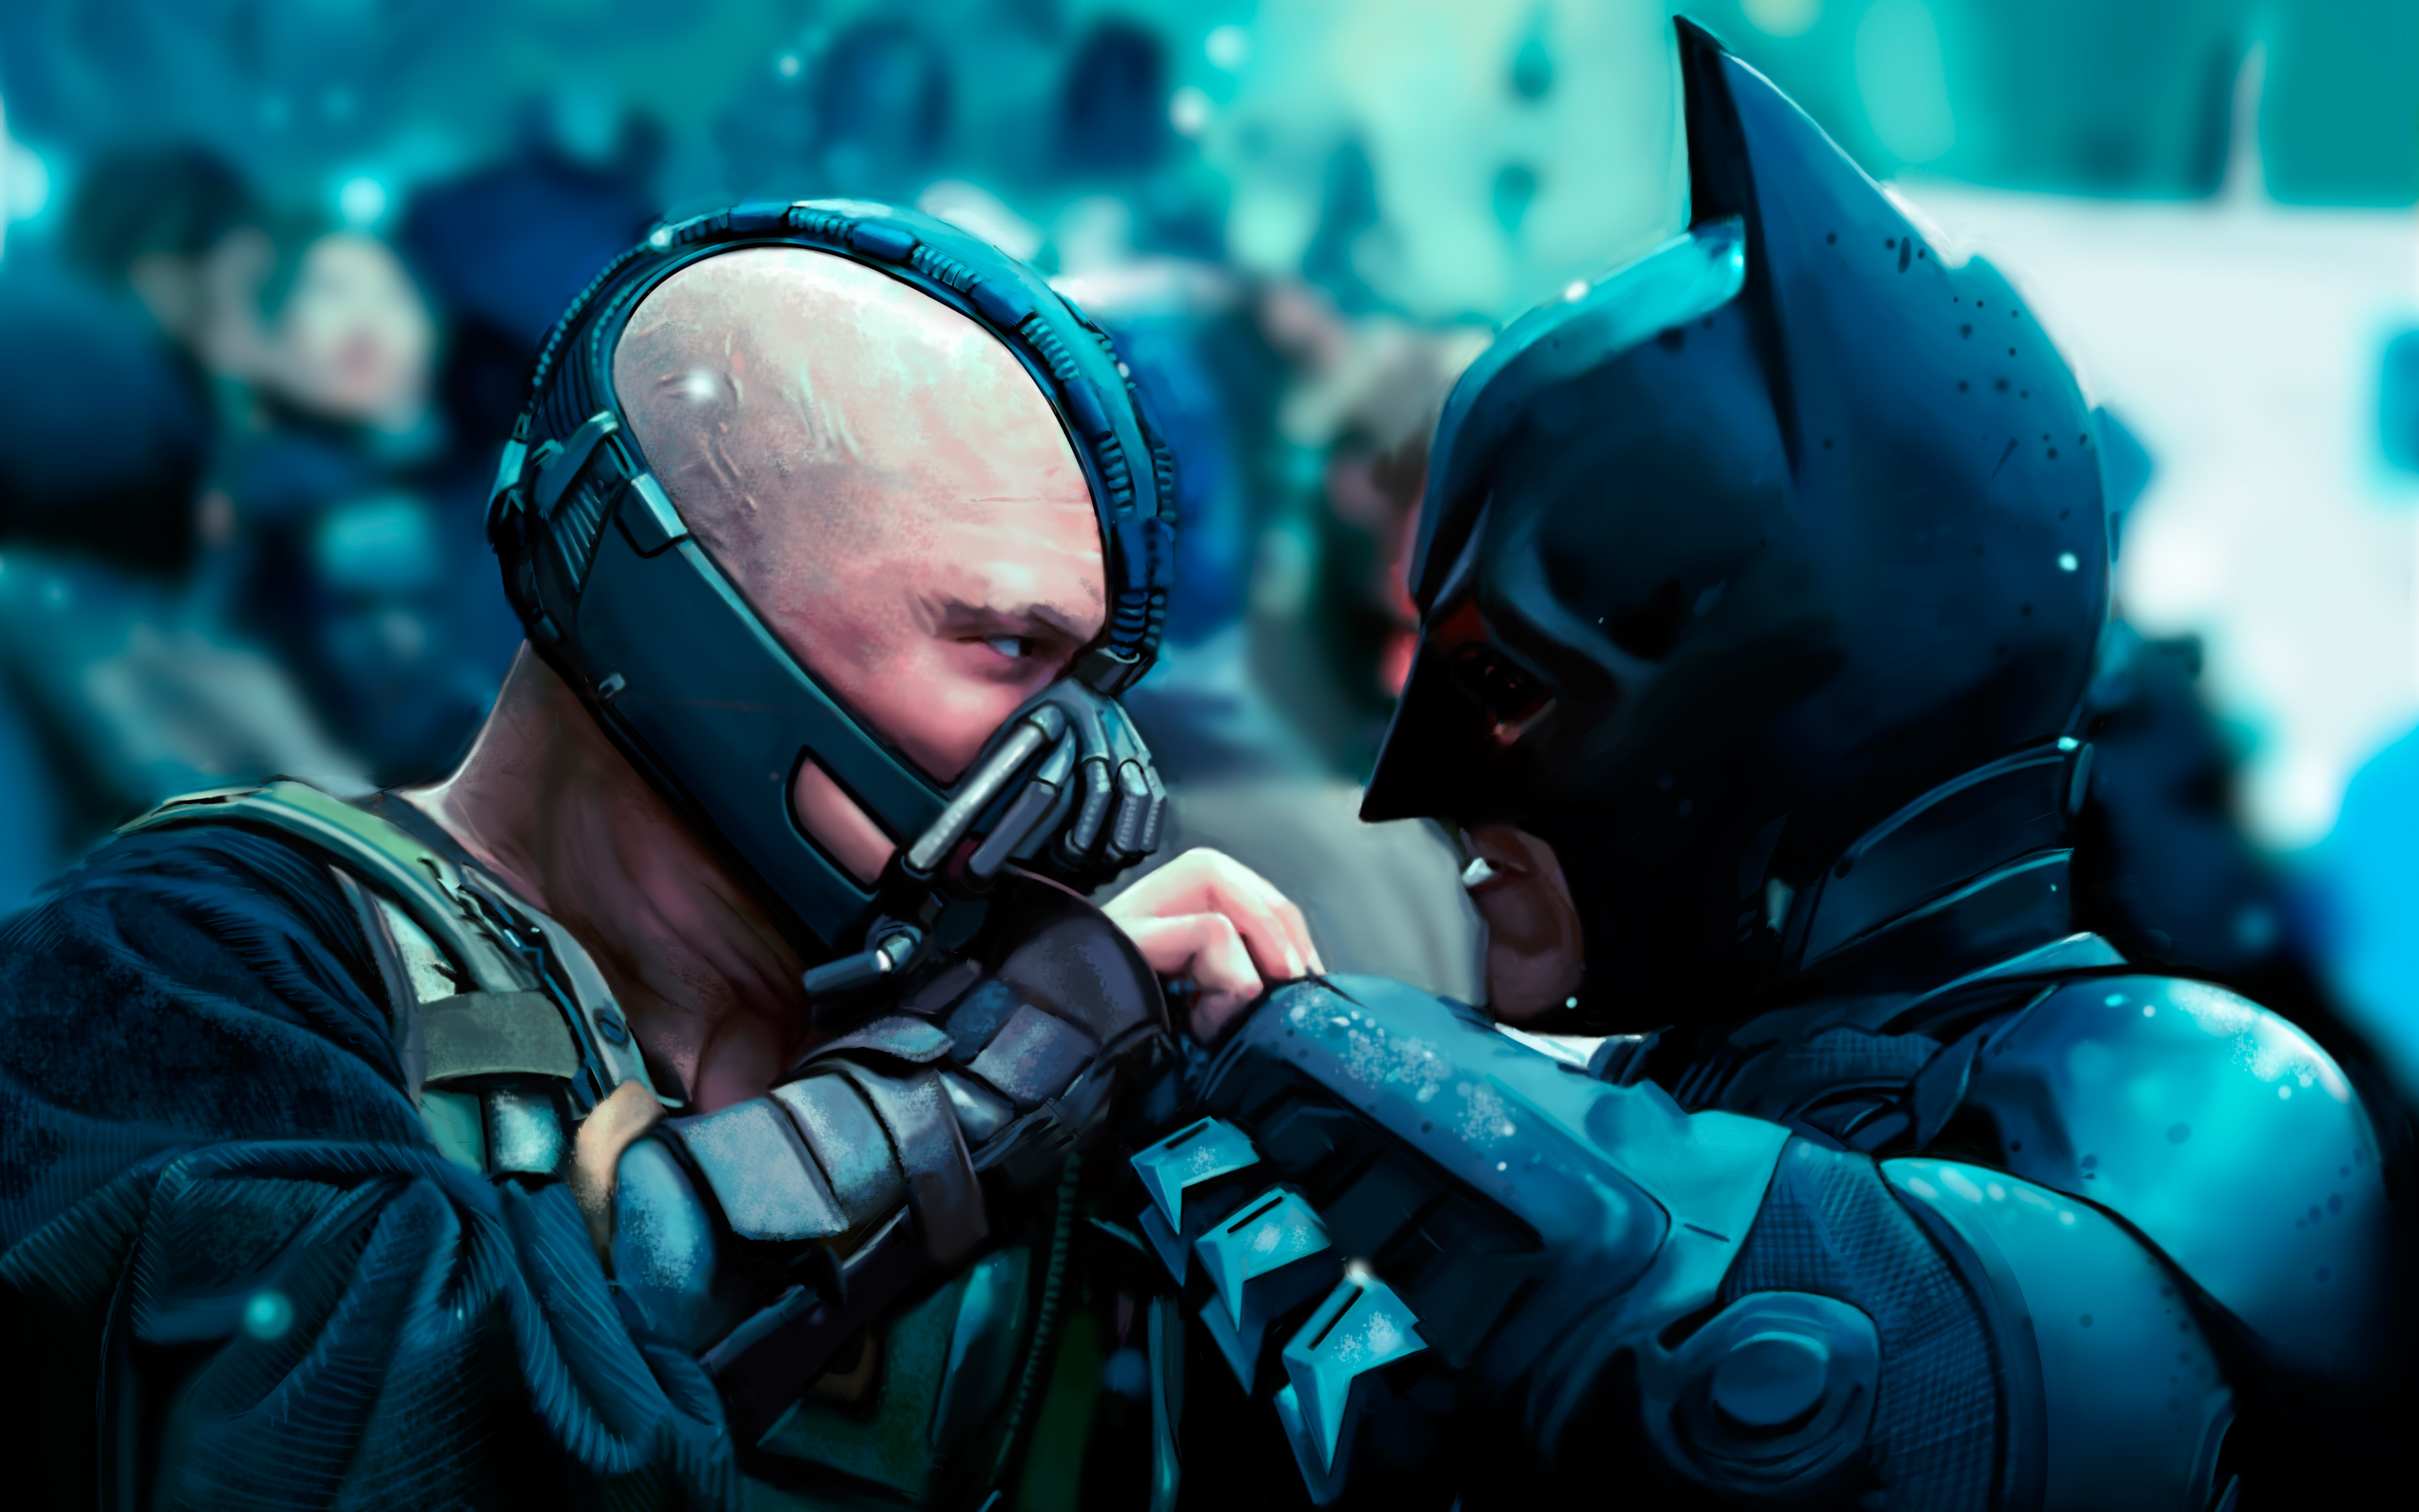 Batman The Dark Knight Rises Scenes - HD Wallpaper 